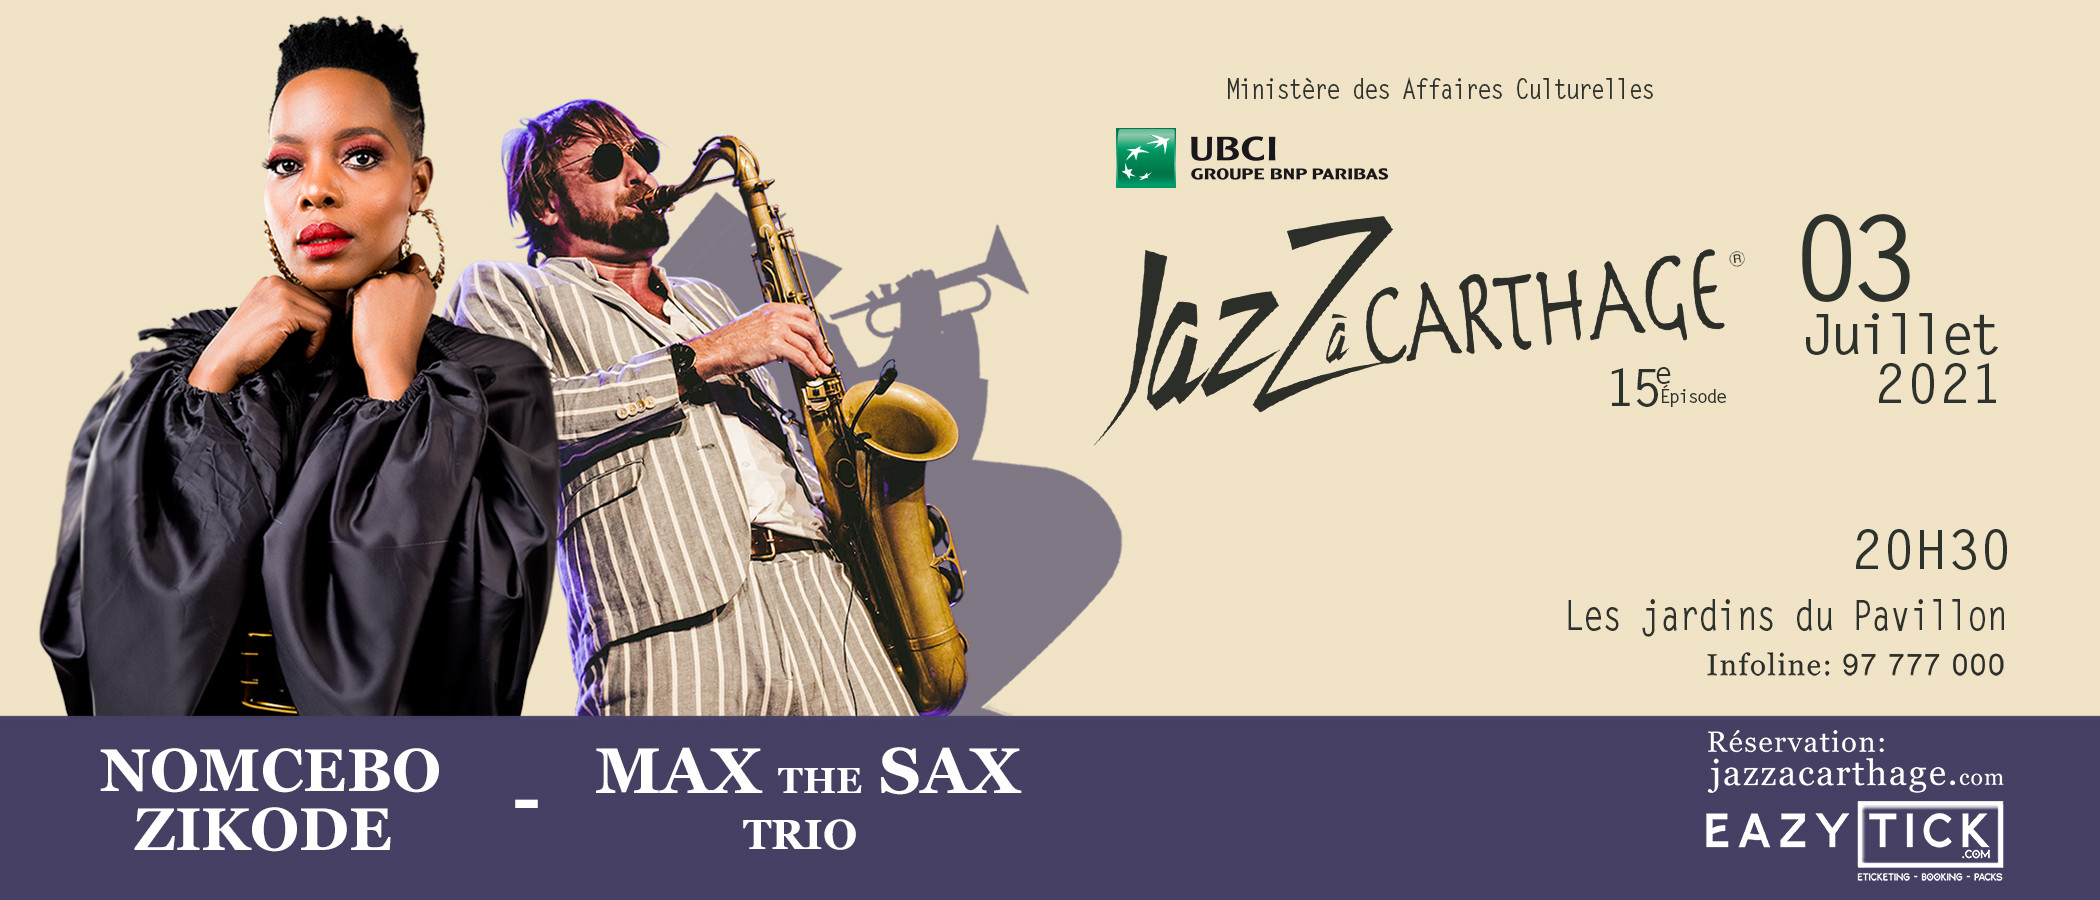 Nomcebo Zikode "Jerusalema" - Max the Sax Trio